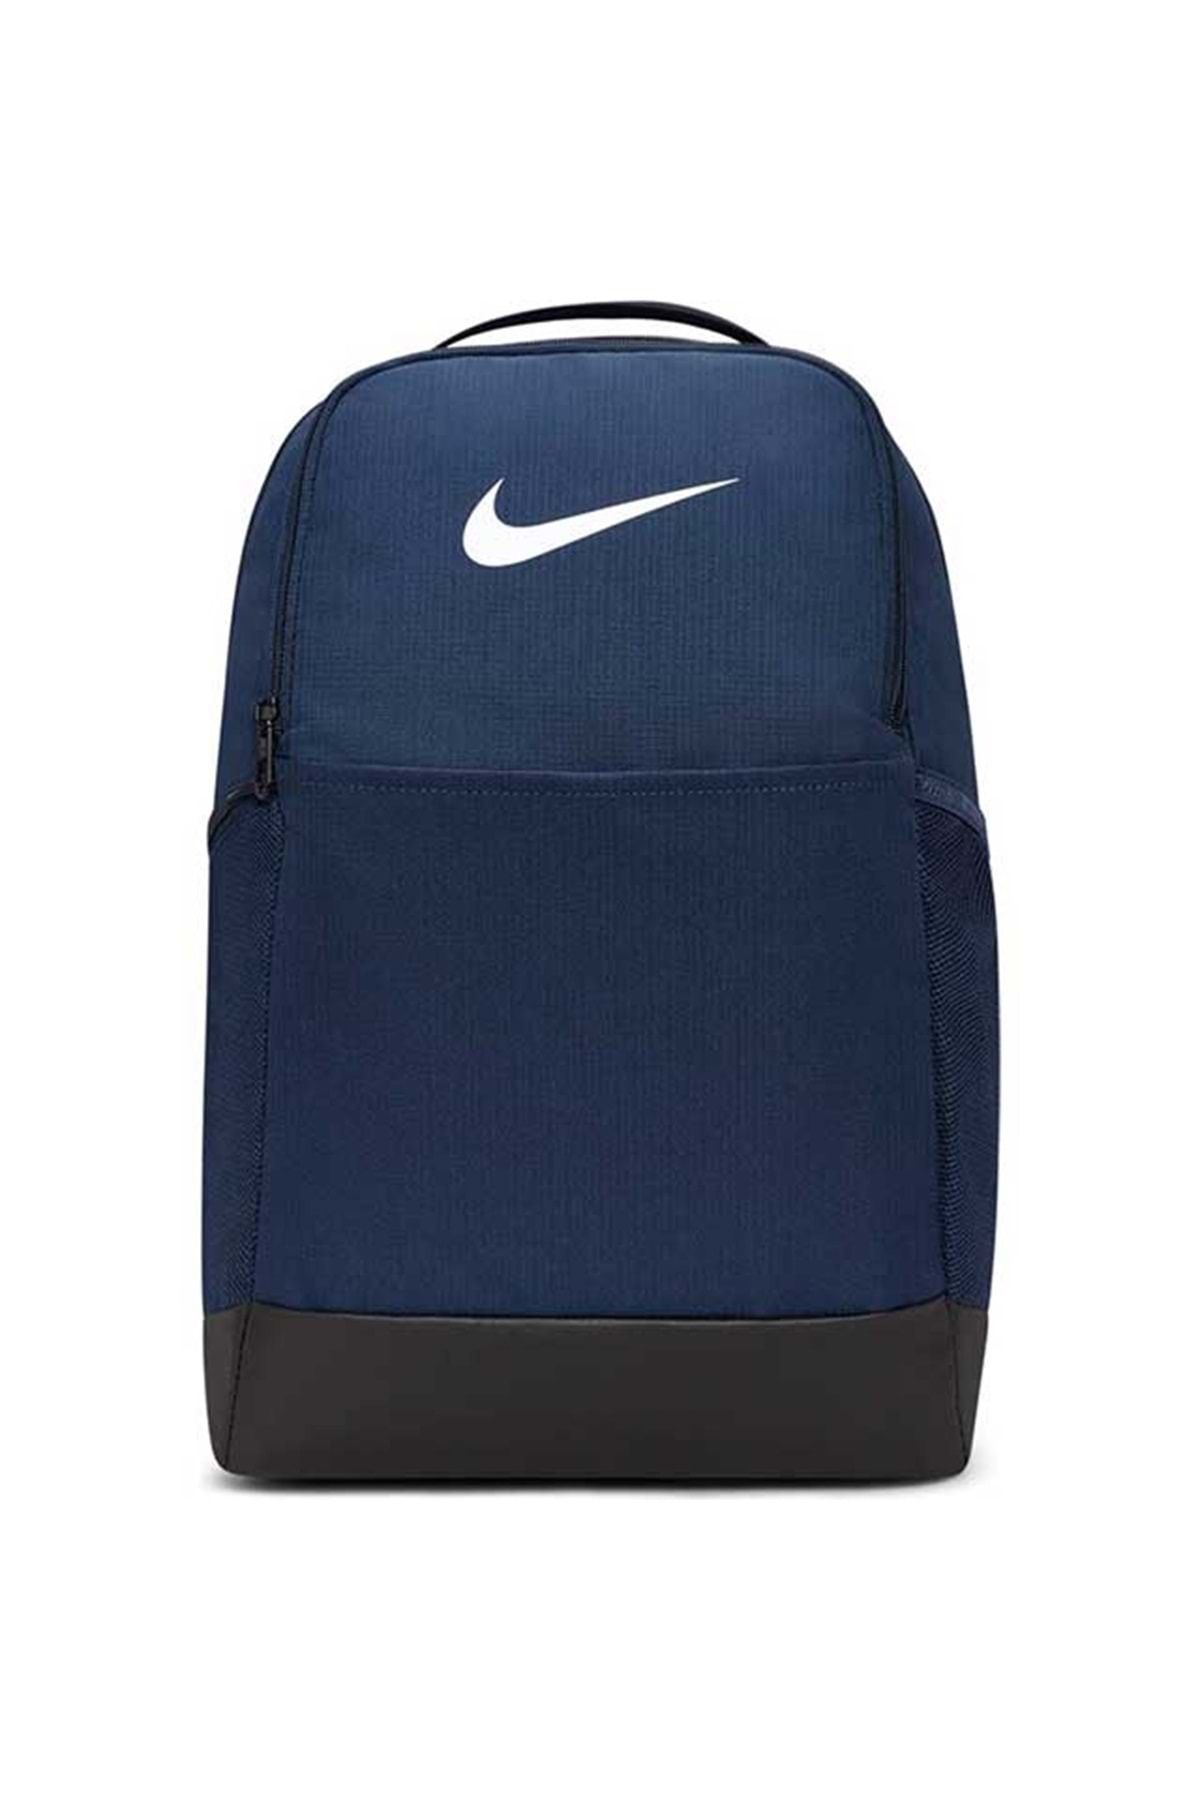 Nike Brasilia 9.5 24l Dh7709- Backpack Sırt Çantası Unisex Sırt Çantası Lacivert